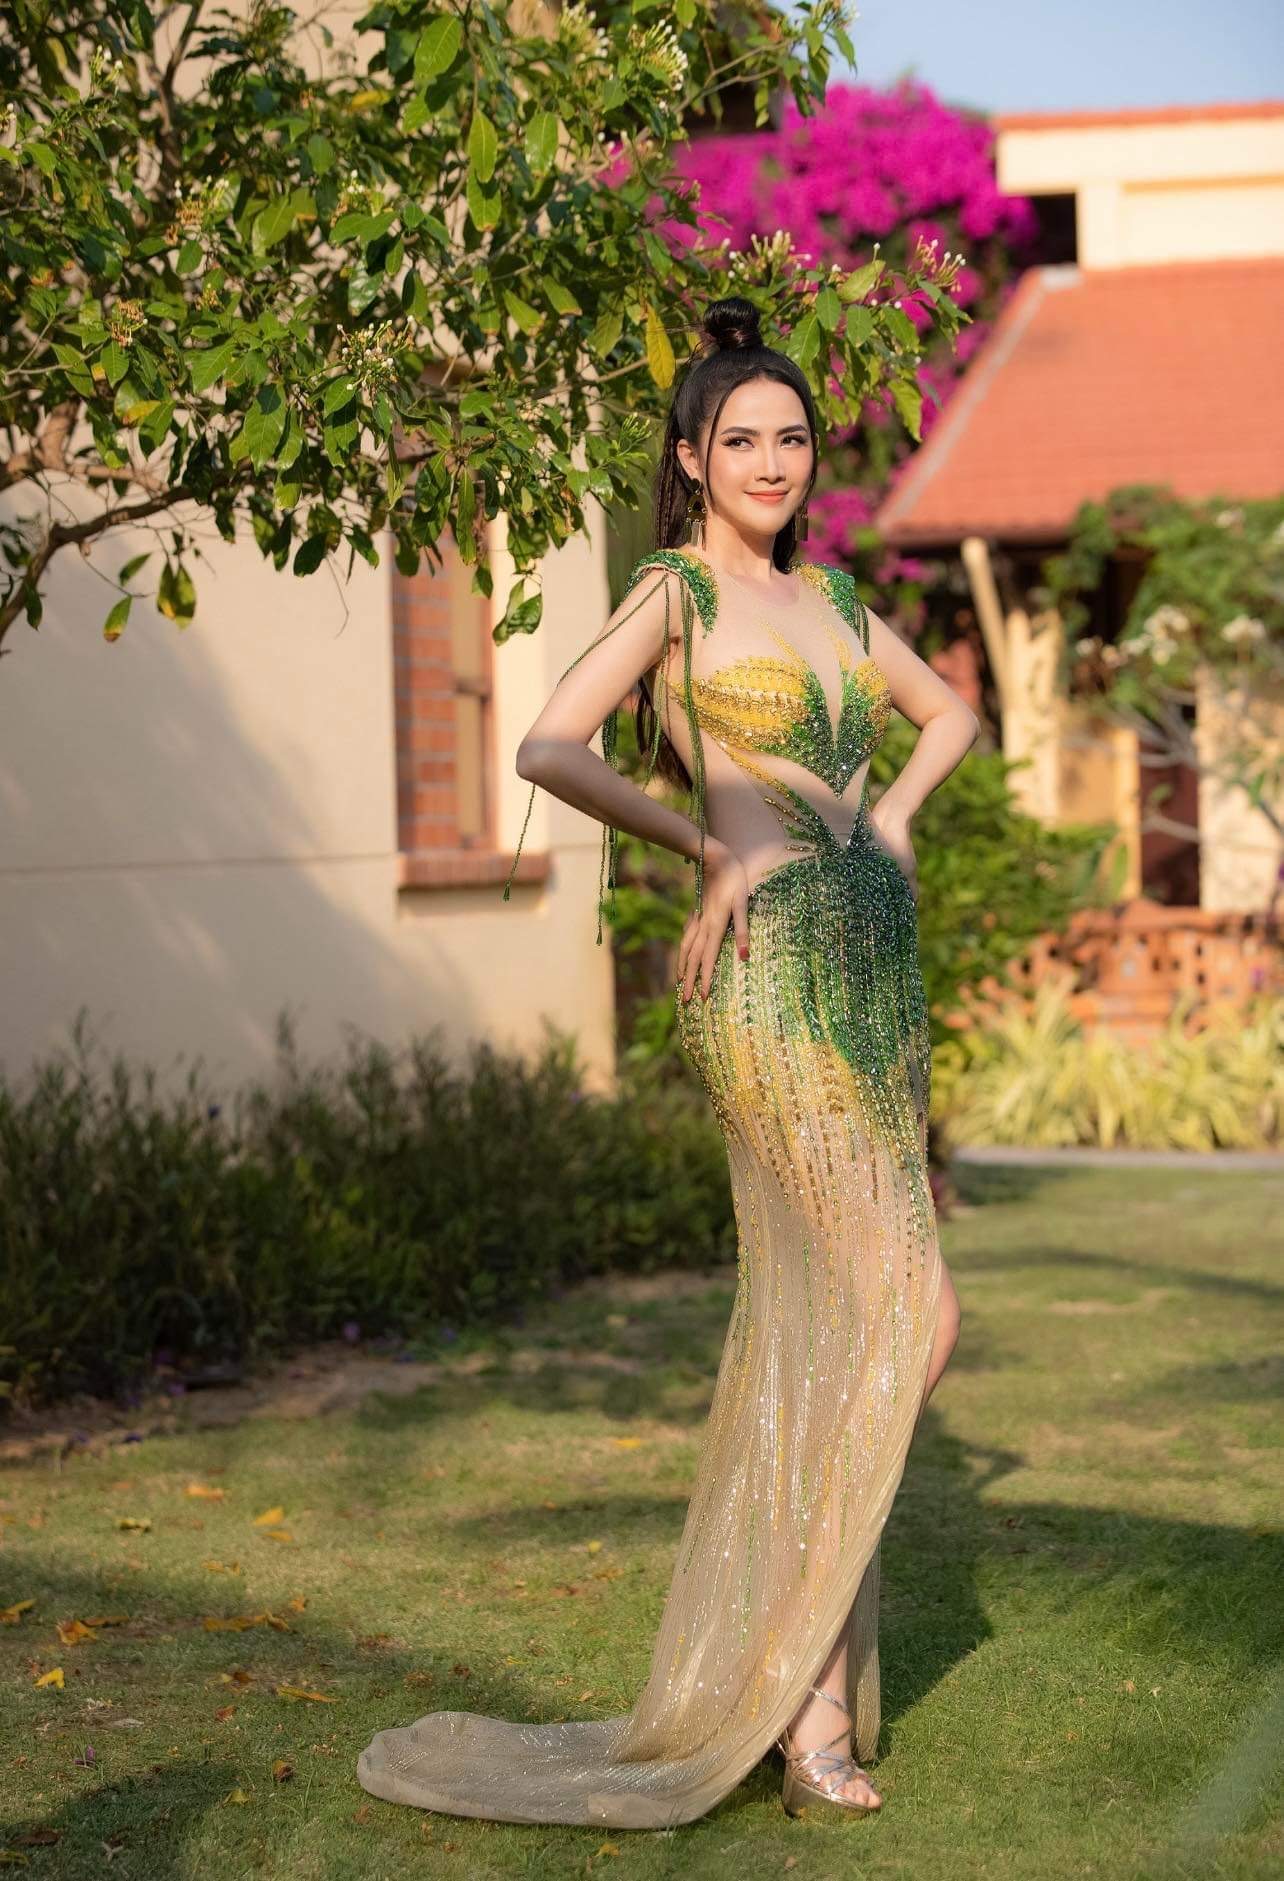  Hoa hậu Phan Thị Mơ: “Tôi còn rất yêu nghề